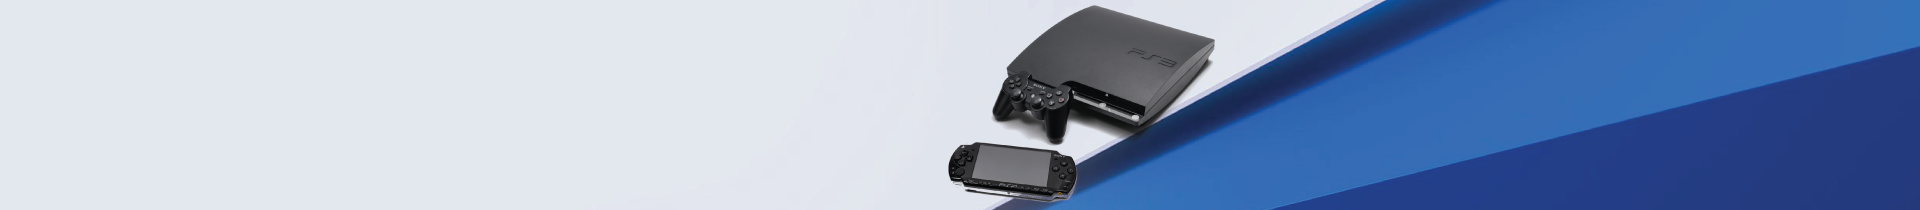 Consolas Playstation | PressStart.pt